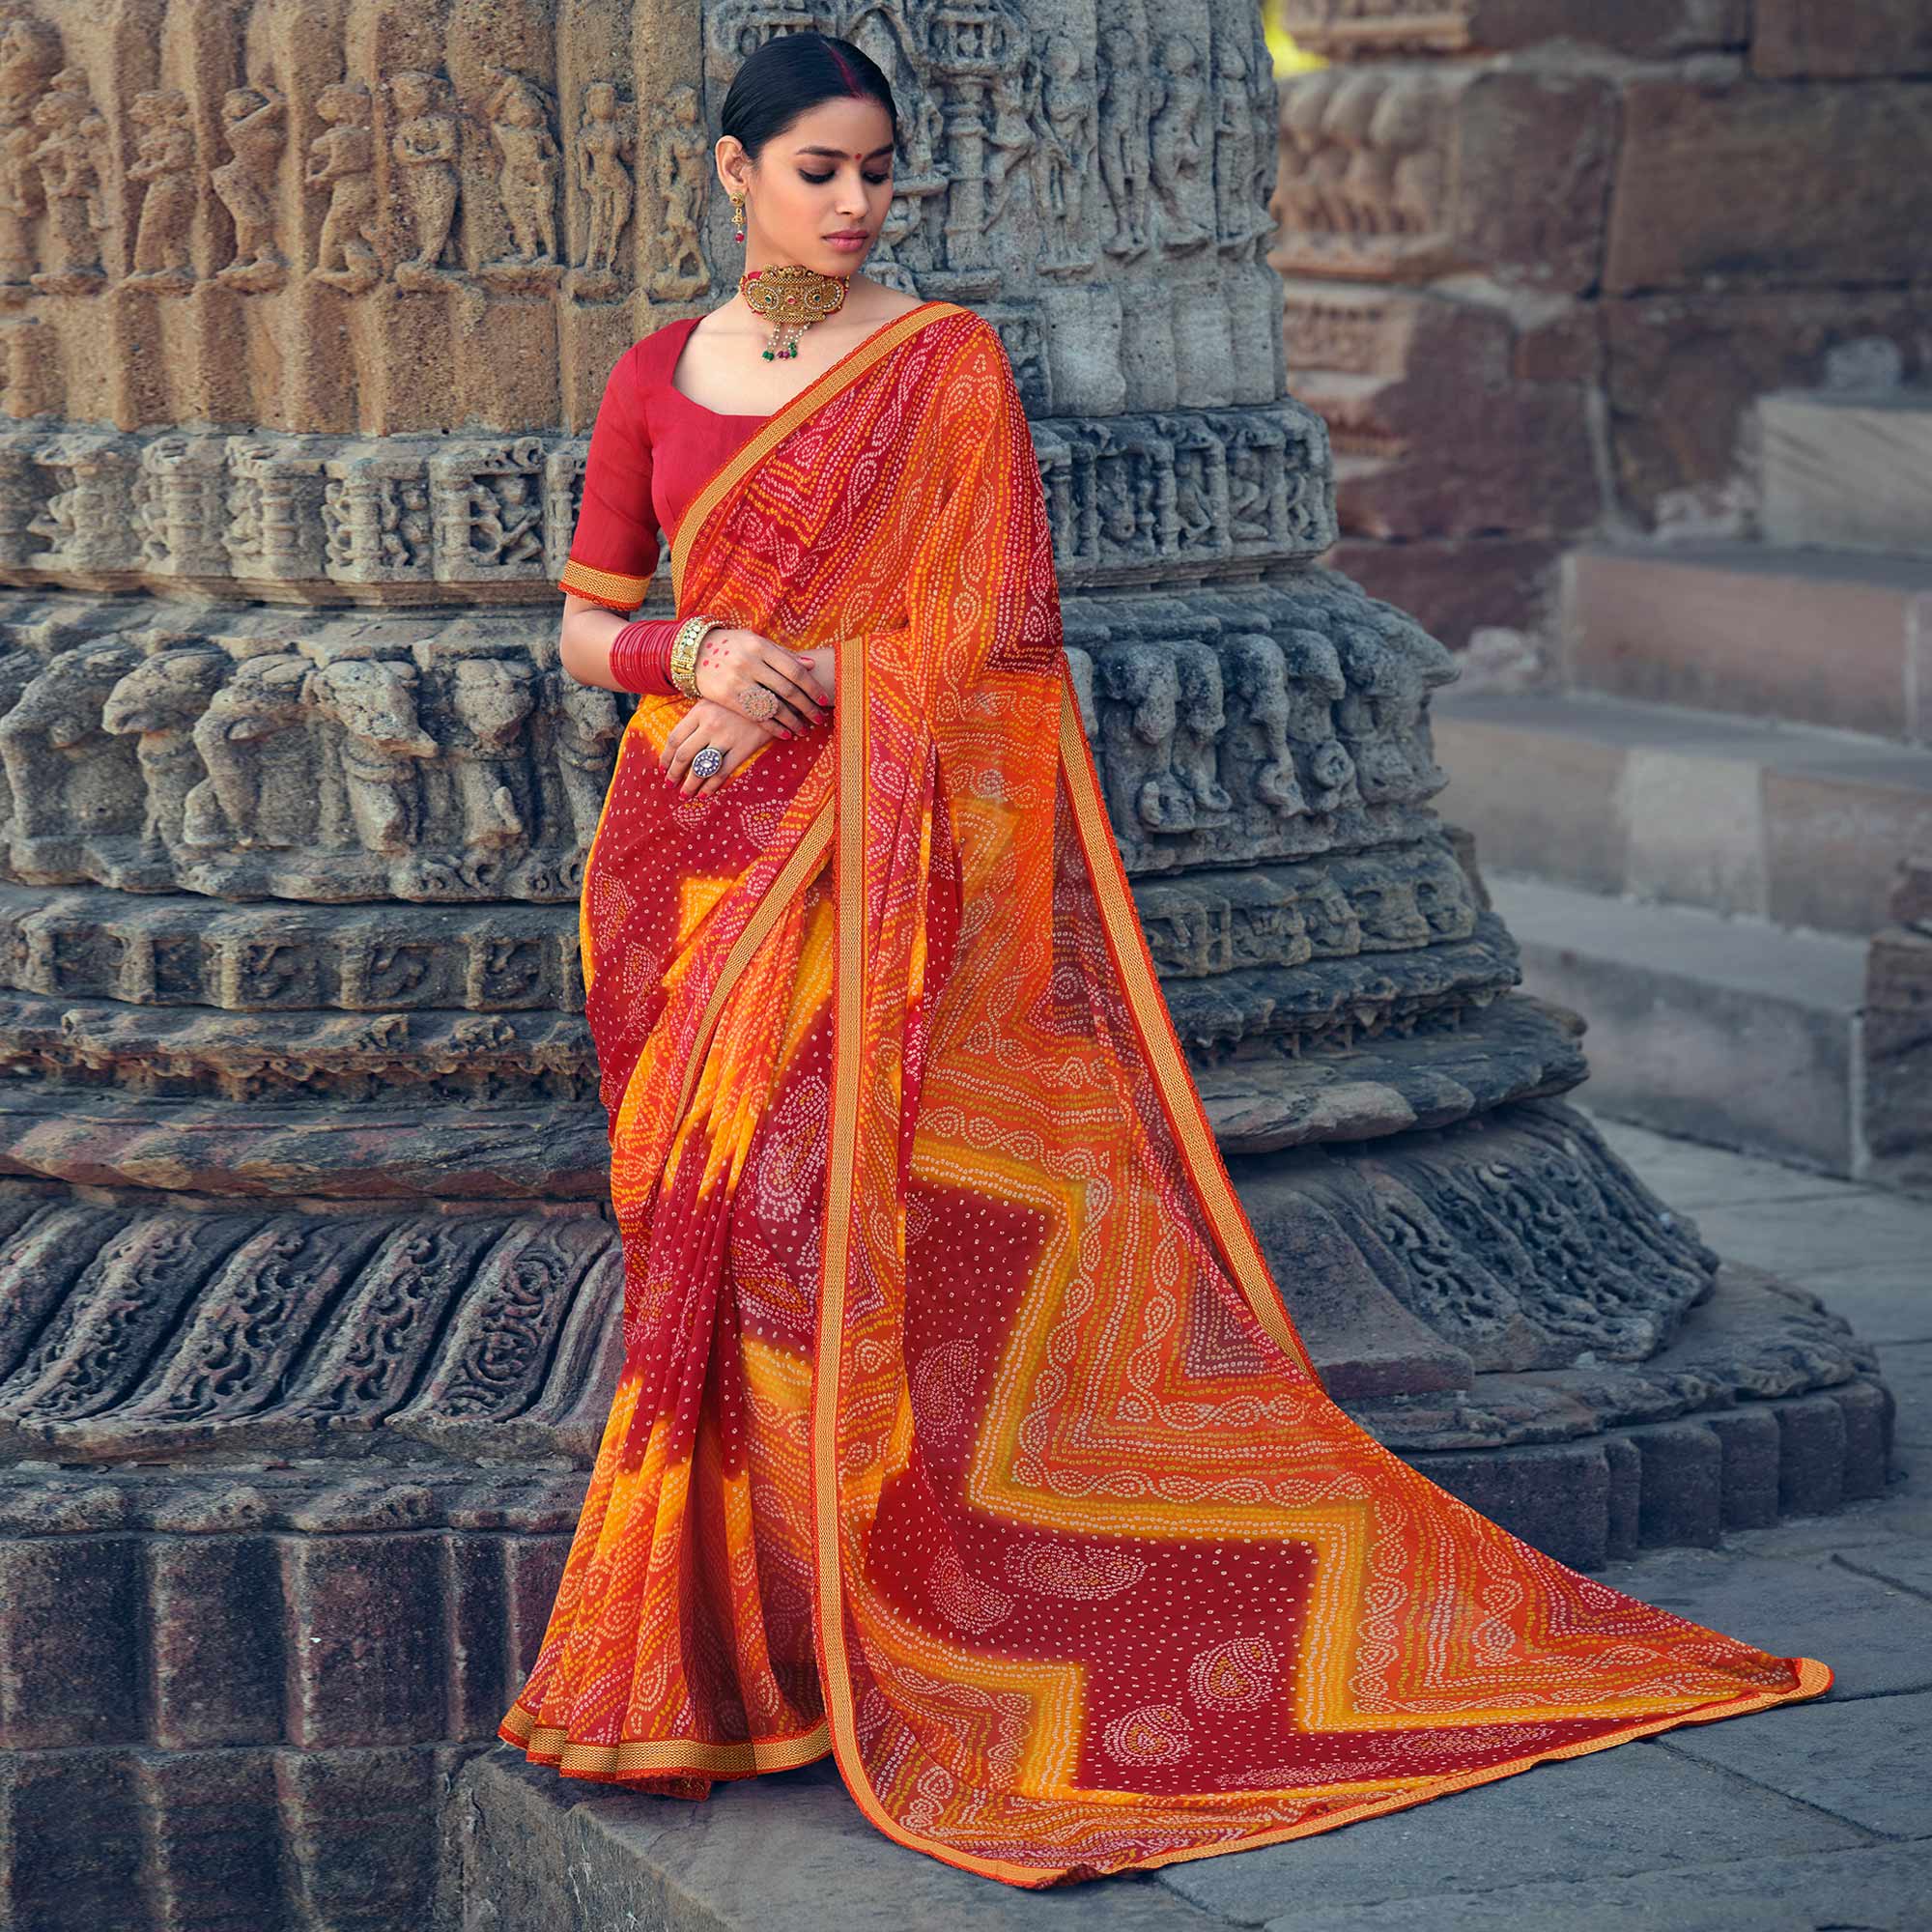 Convert old Saree into Long gown/Kurta/Kurti Design Ideas || Long Gown  Making Ideas - YouTube | Model rok, Gaun sari, Gaun saree